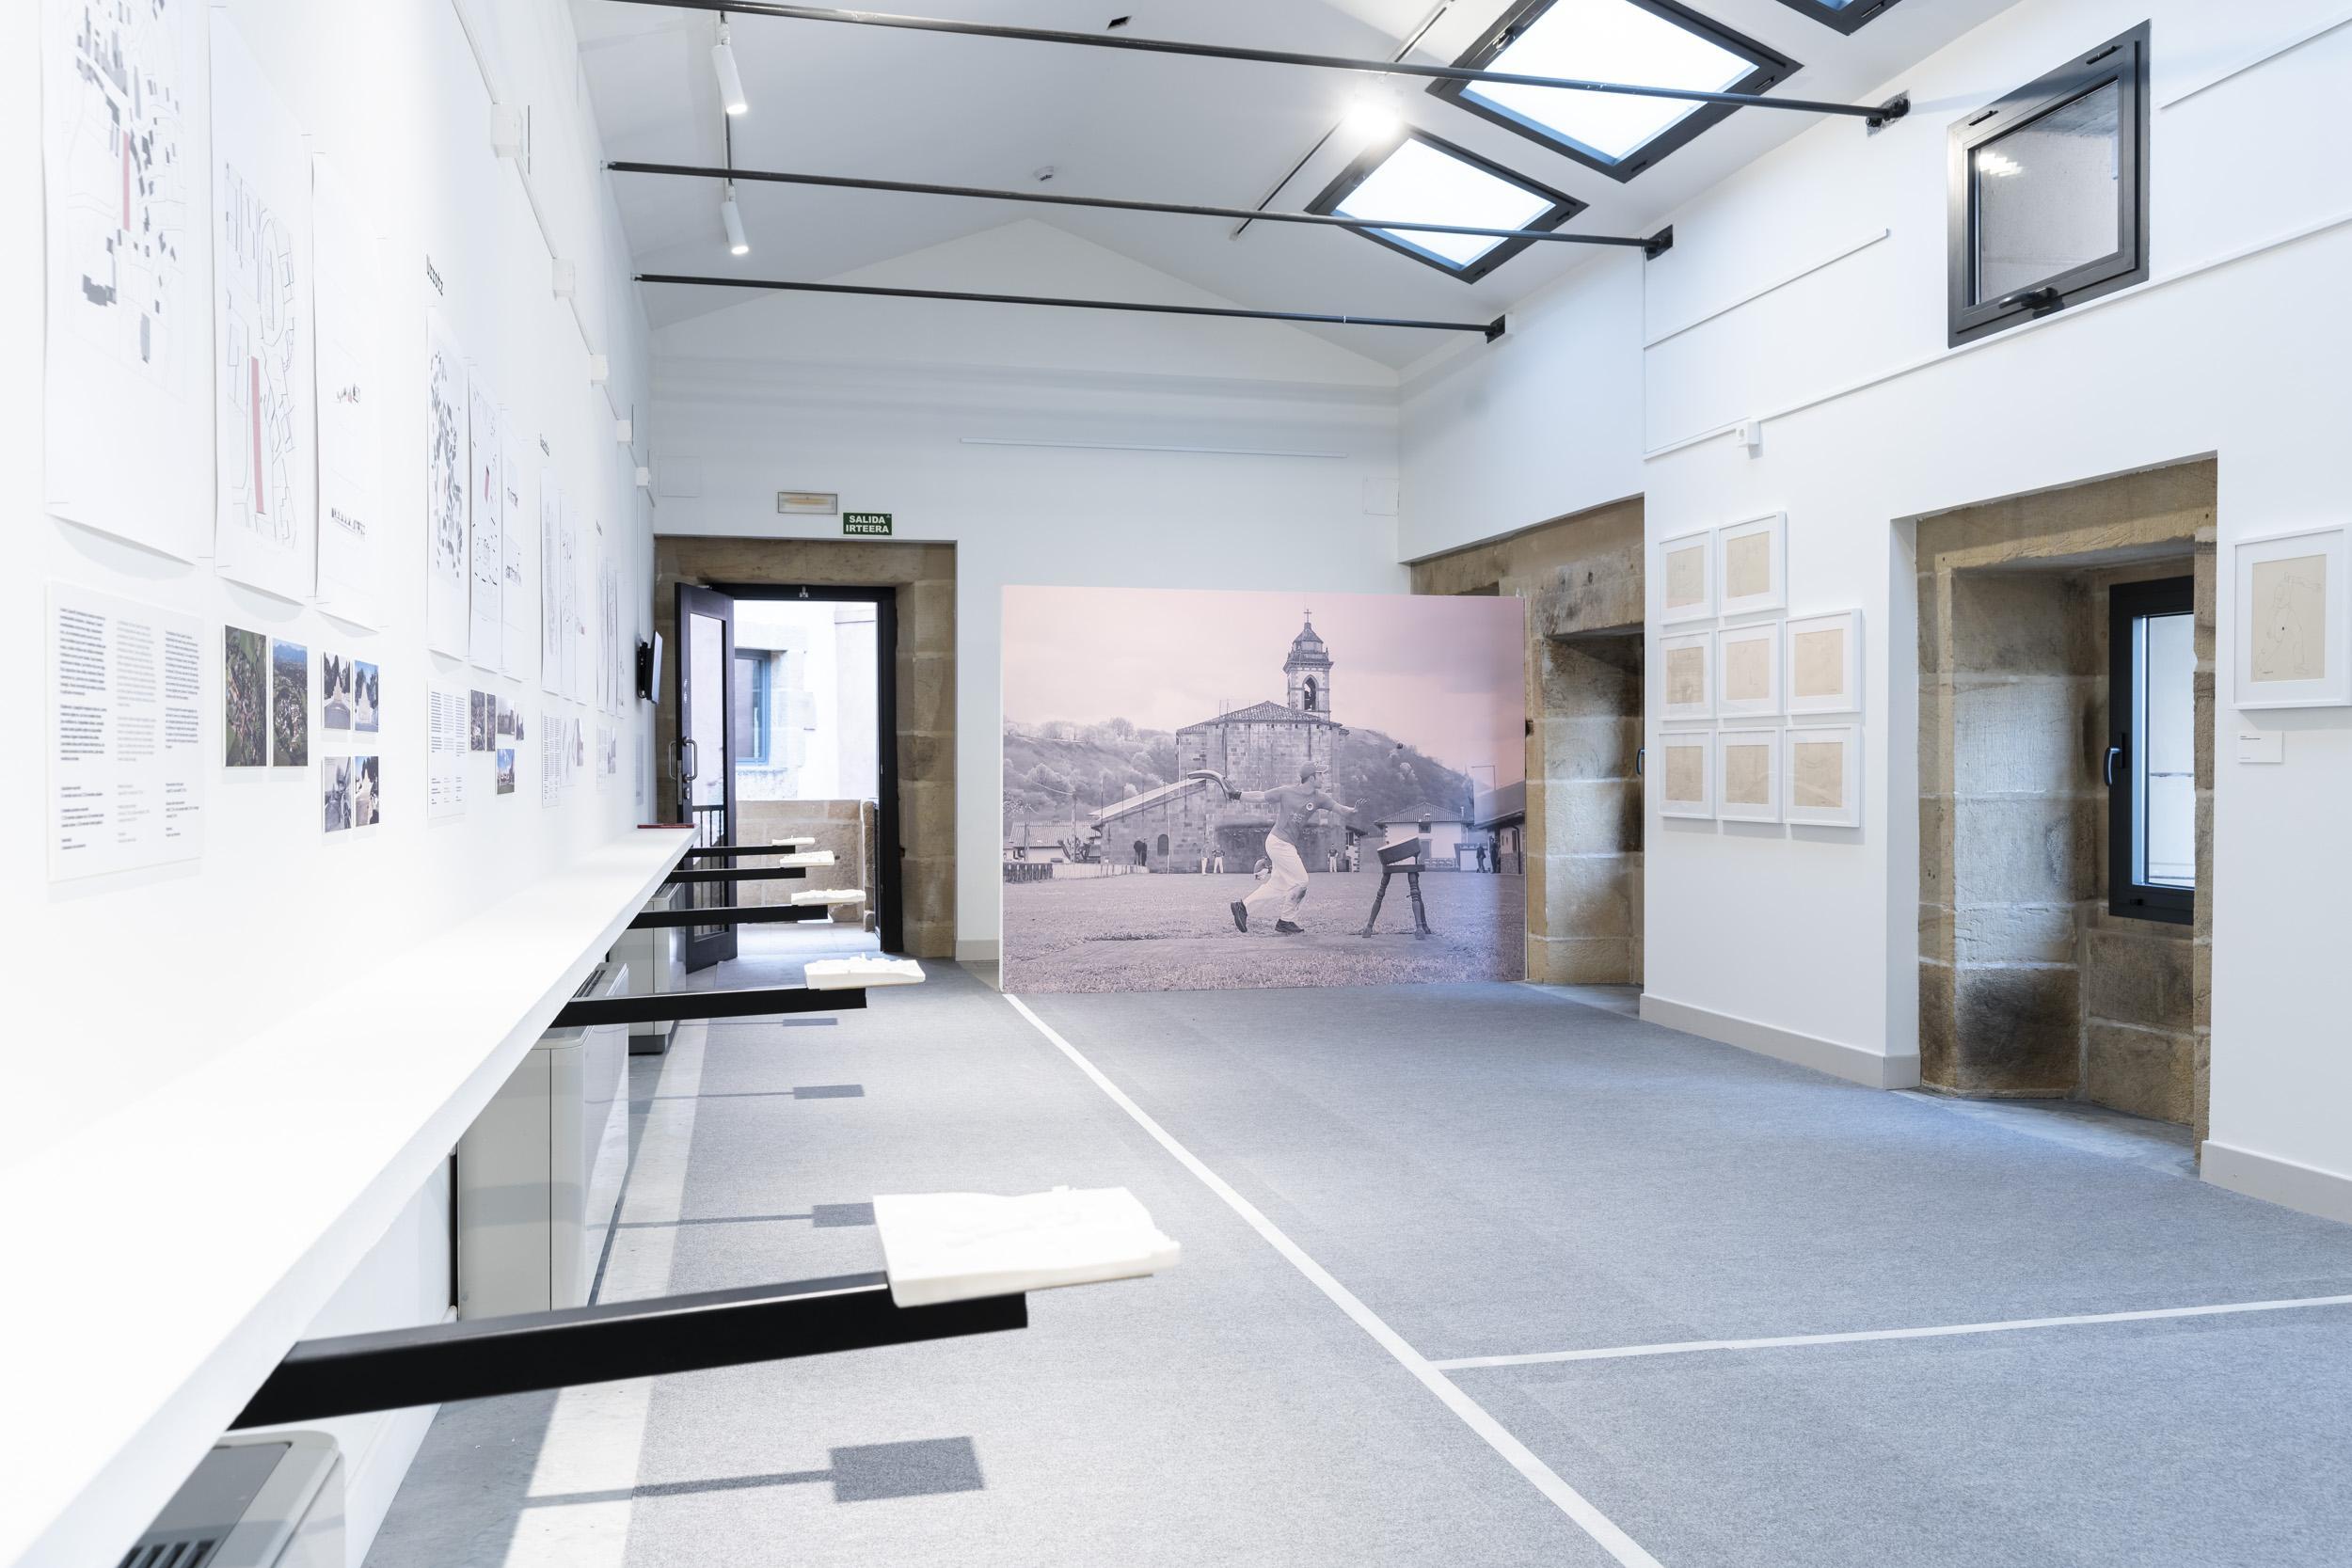 En esta imagen se puede ver la exposición de Pilotalekuak. En una sala grande con las paredes con expositores y al fondo una imagen antigua de un hombre con una cesta en la mano.